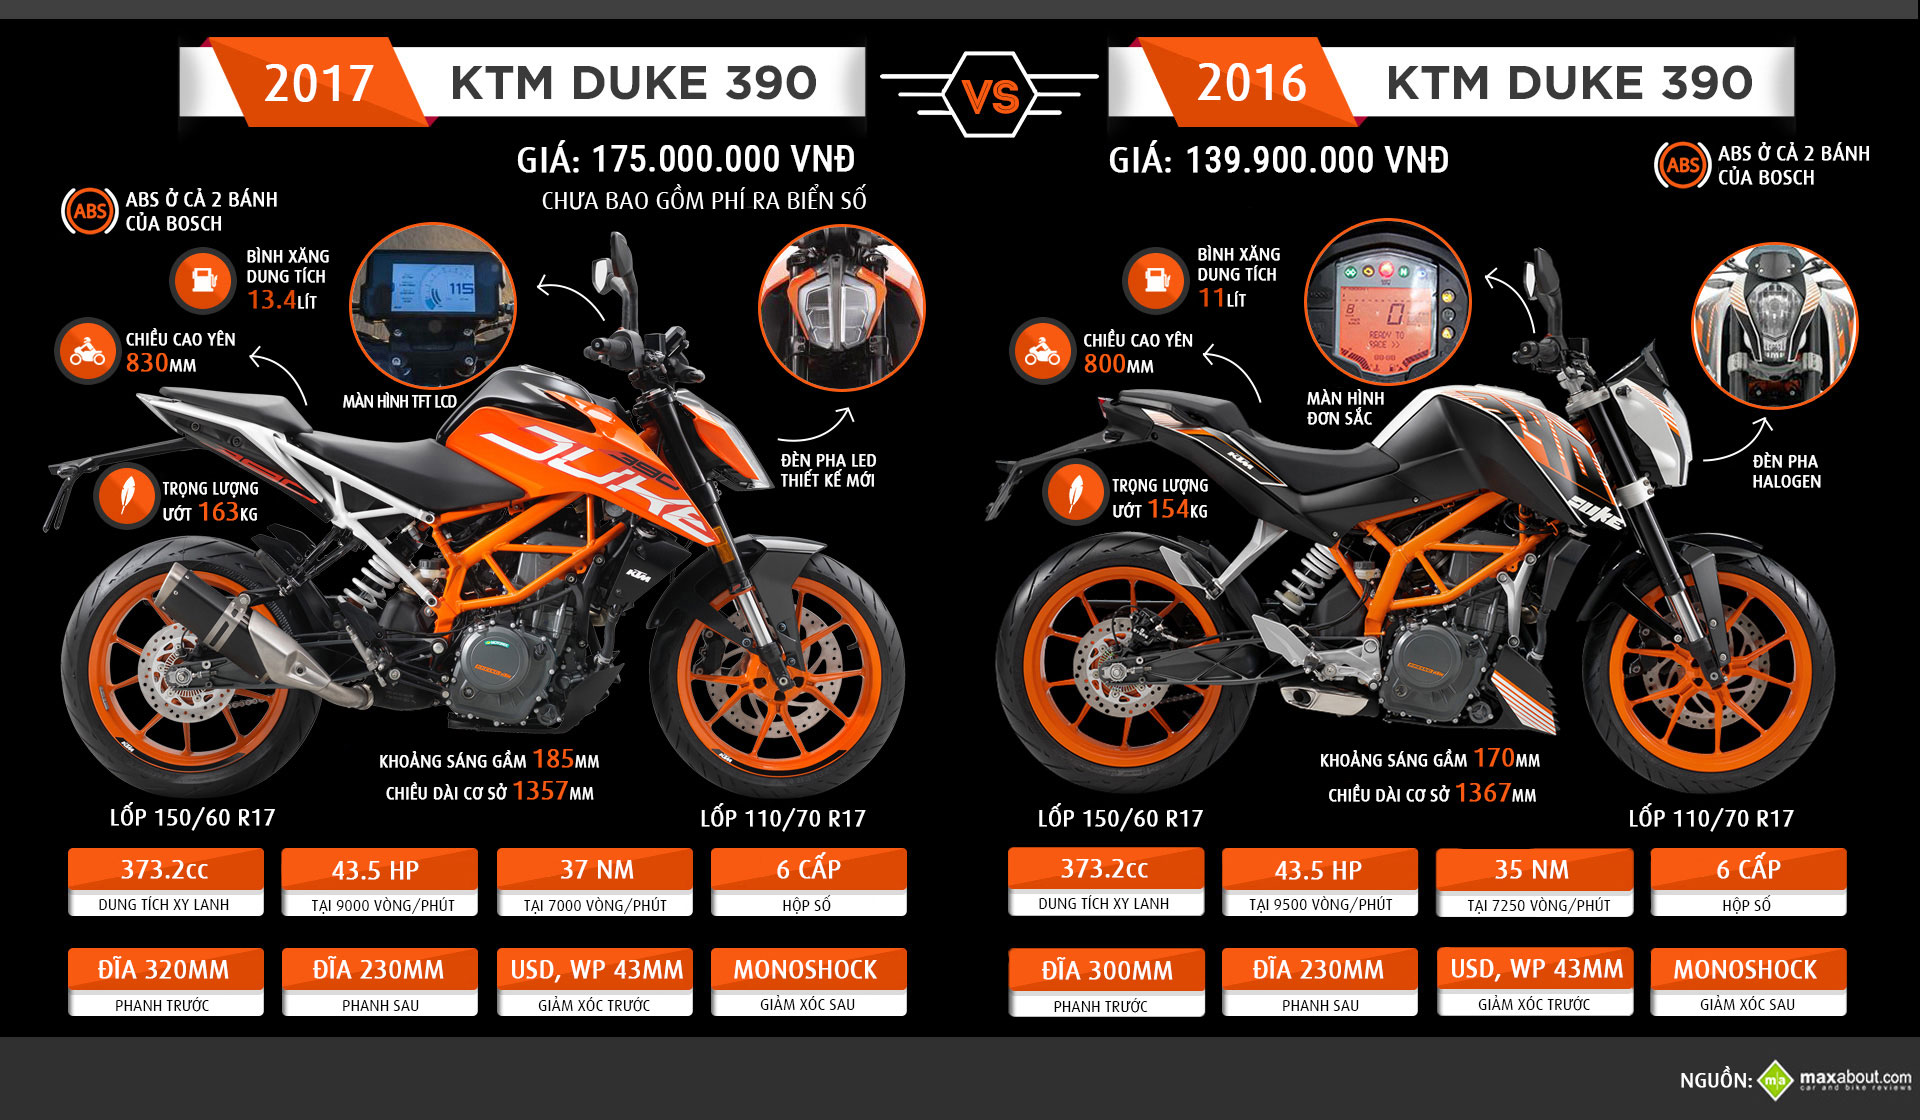 KTM 390 Duke 2017 Lột xác hoàn toàn công nghệ cao hơn